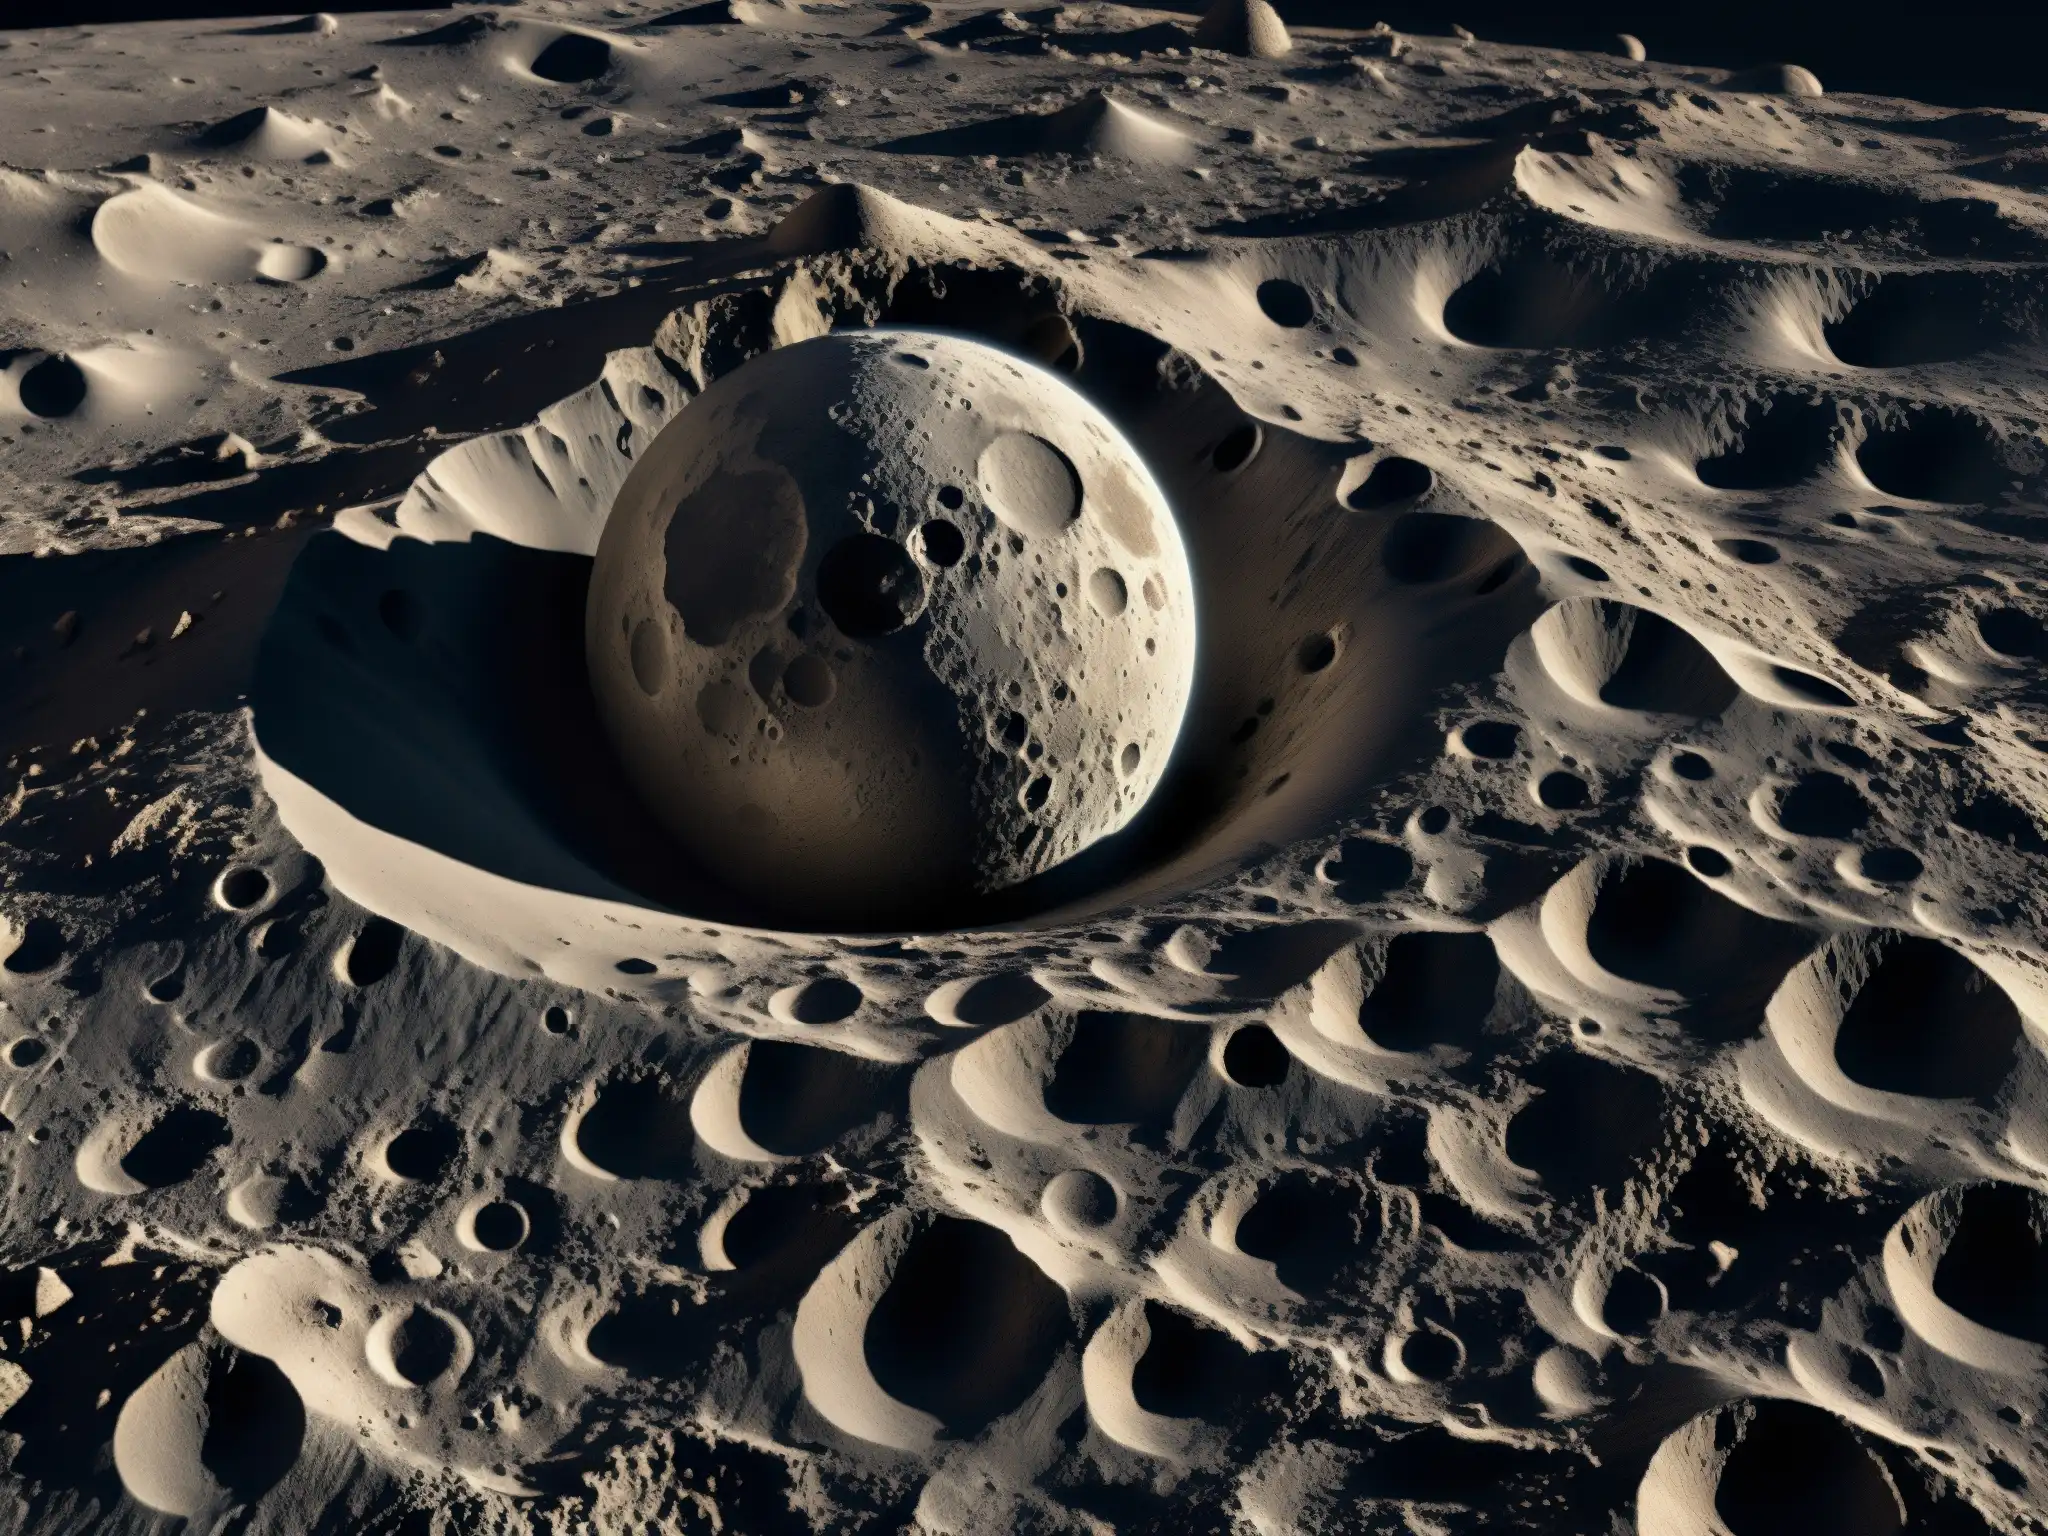 Imagen detallada de la luna con cráteres y rocas lunares, mostrando la belleza y misterio del paisaje lunar